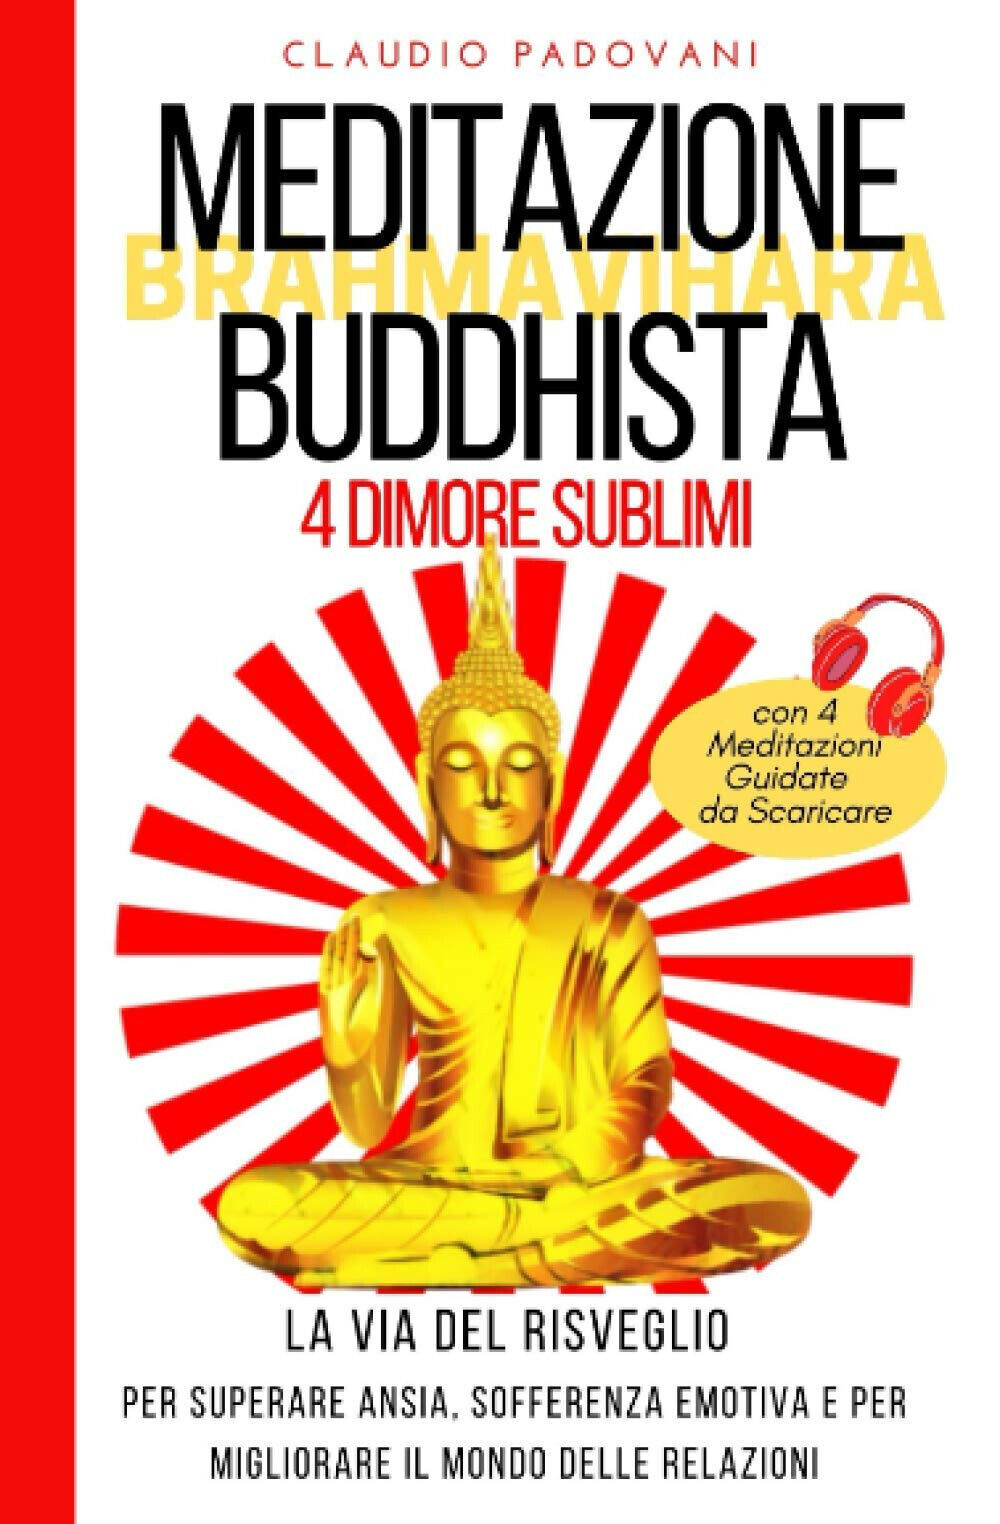 Meditazione Buddhista delle 4 Dimore Sublimi - Claudio Padovani - 2021